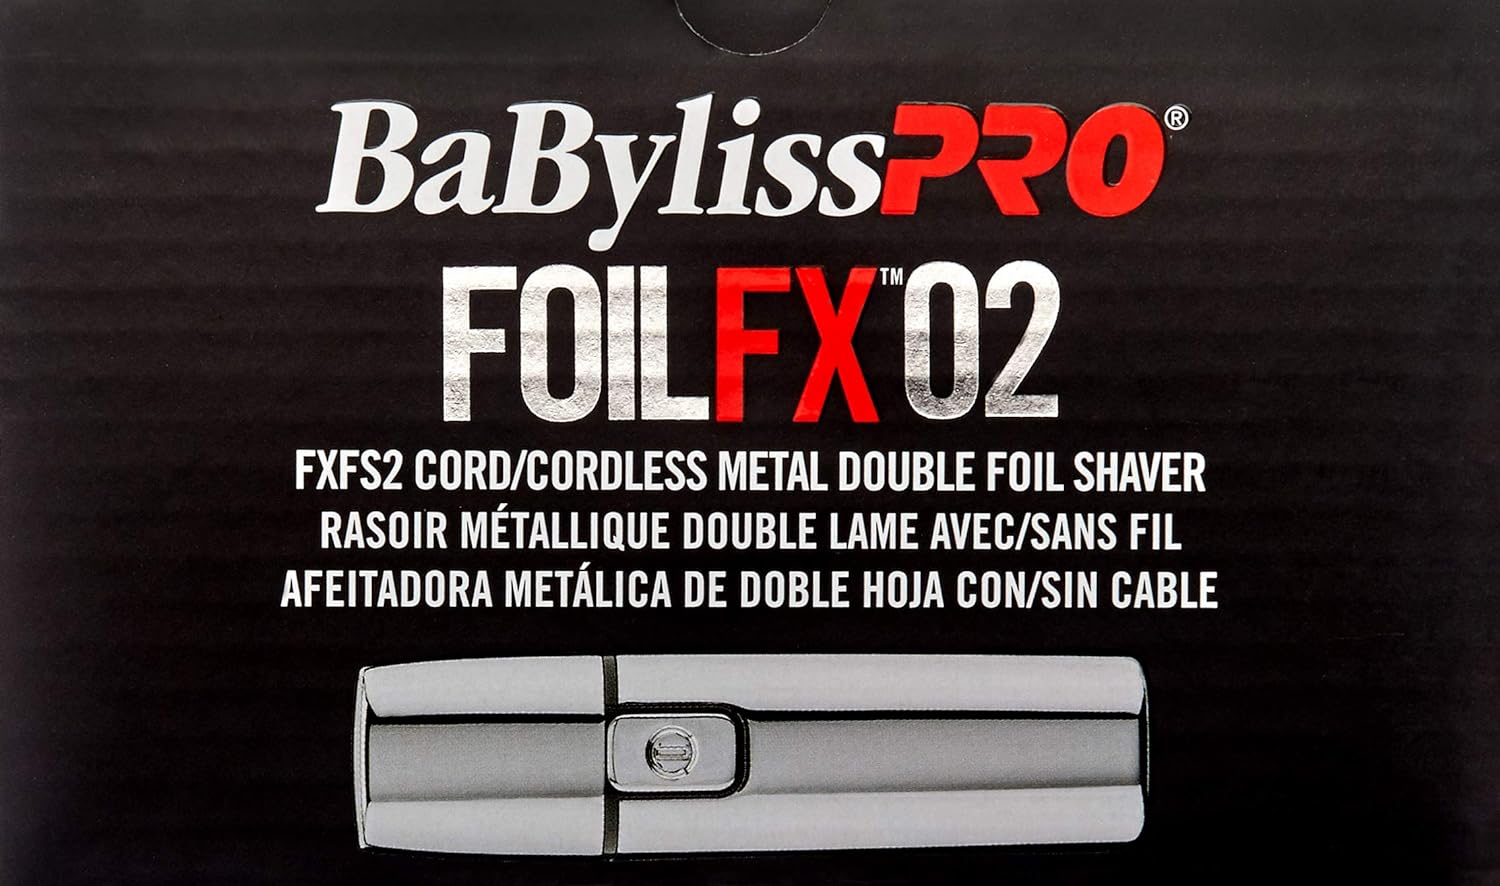 BaBylissPRO METALFX Double Foil Shavers